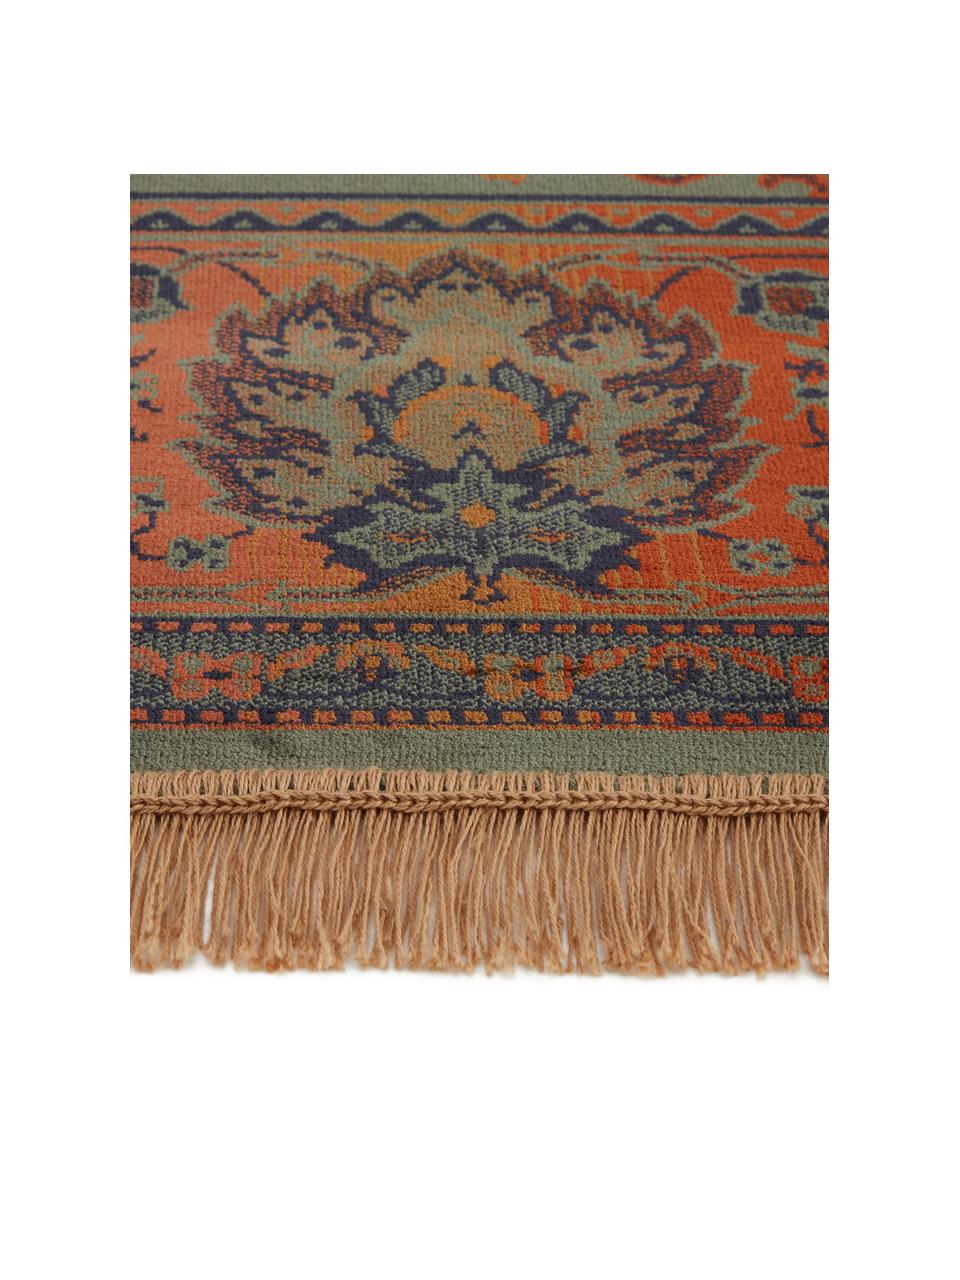 Teppich Bid mit Blumenmuster im Orient Style, Flor: 38% Rayon, 26% Baumwolle,, Grüntöne, Rottöne, Blau, Beige, B 200 x L 300 cm (Grösse L)